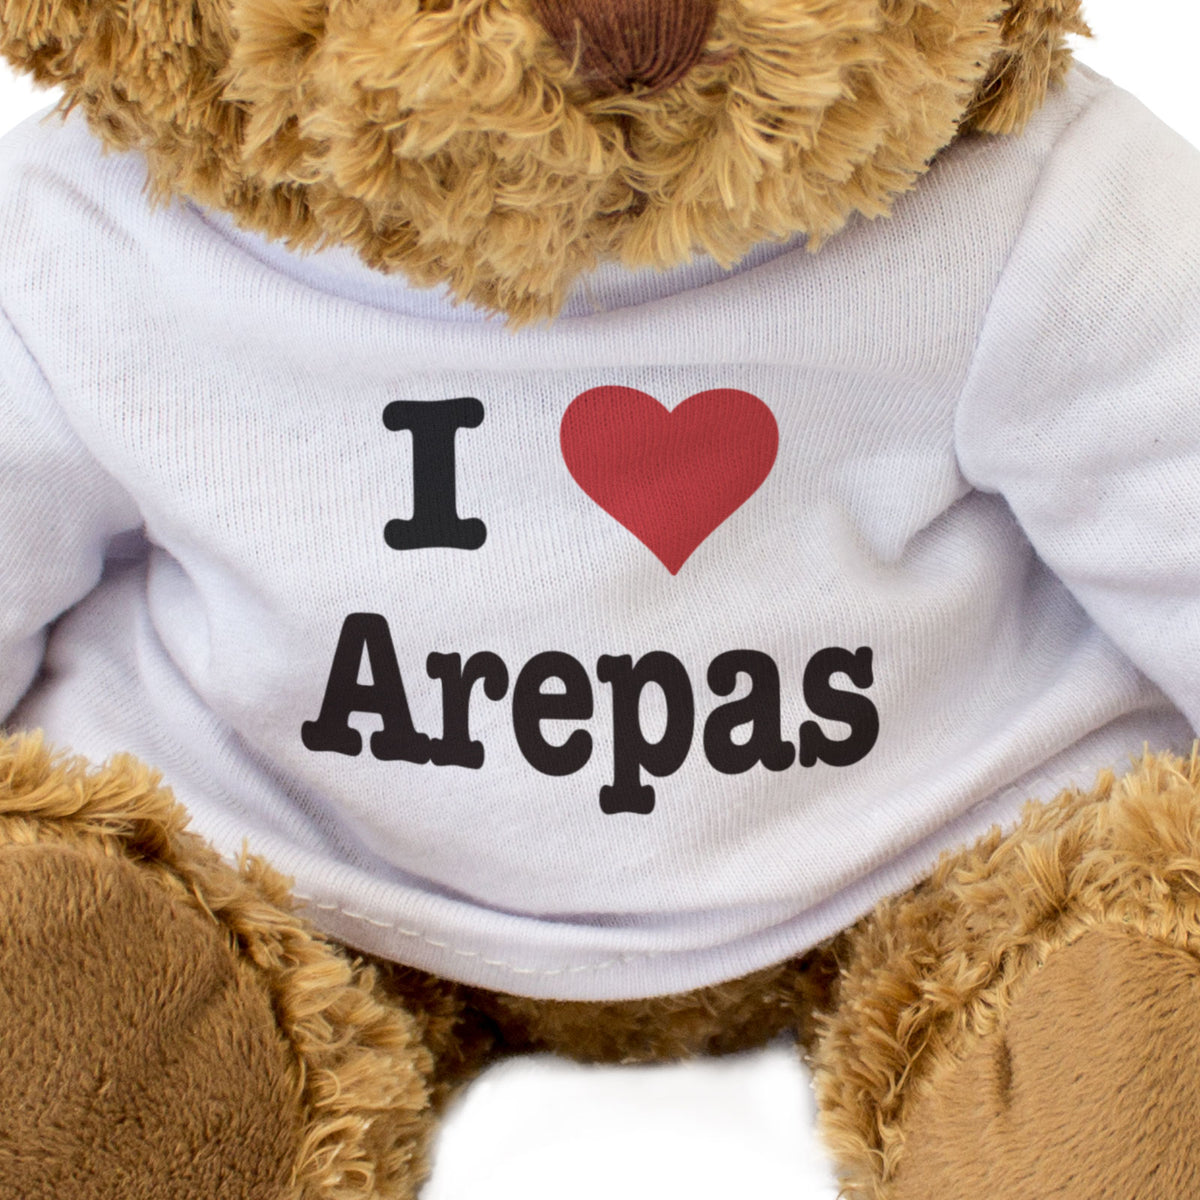 I Love Arepas - Teddy Bear